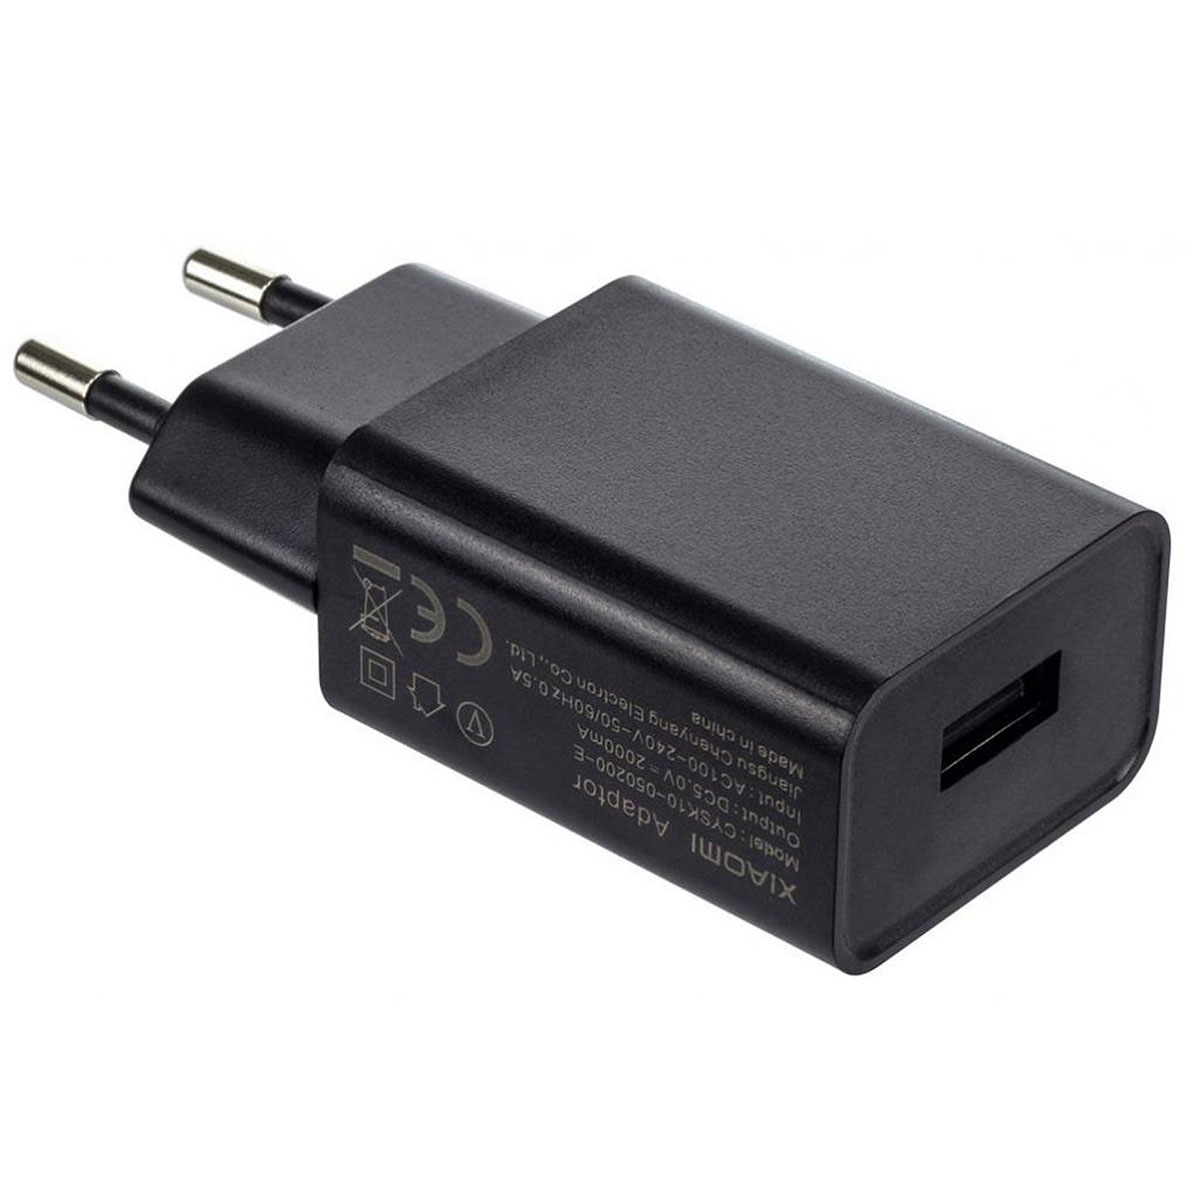 СЗУ (Сетевое зарядное устройство) XIAOMI CYSK10-050200-E, 5V-2A, цвет черный.